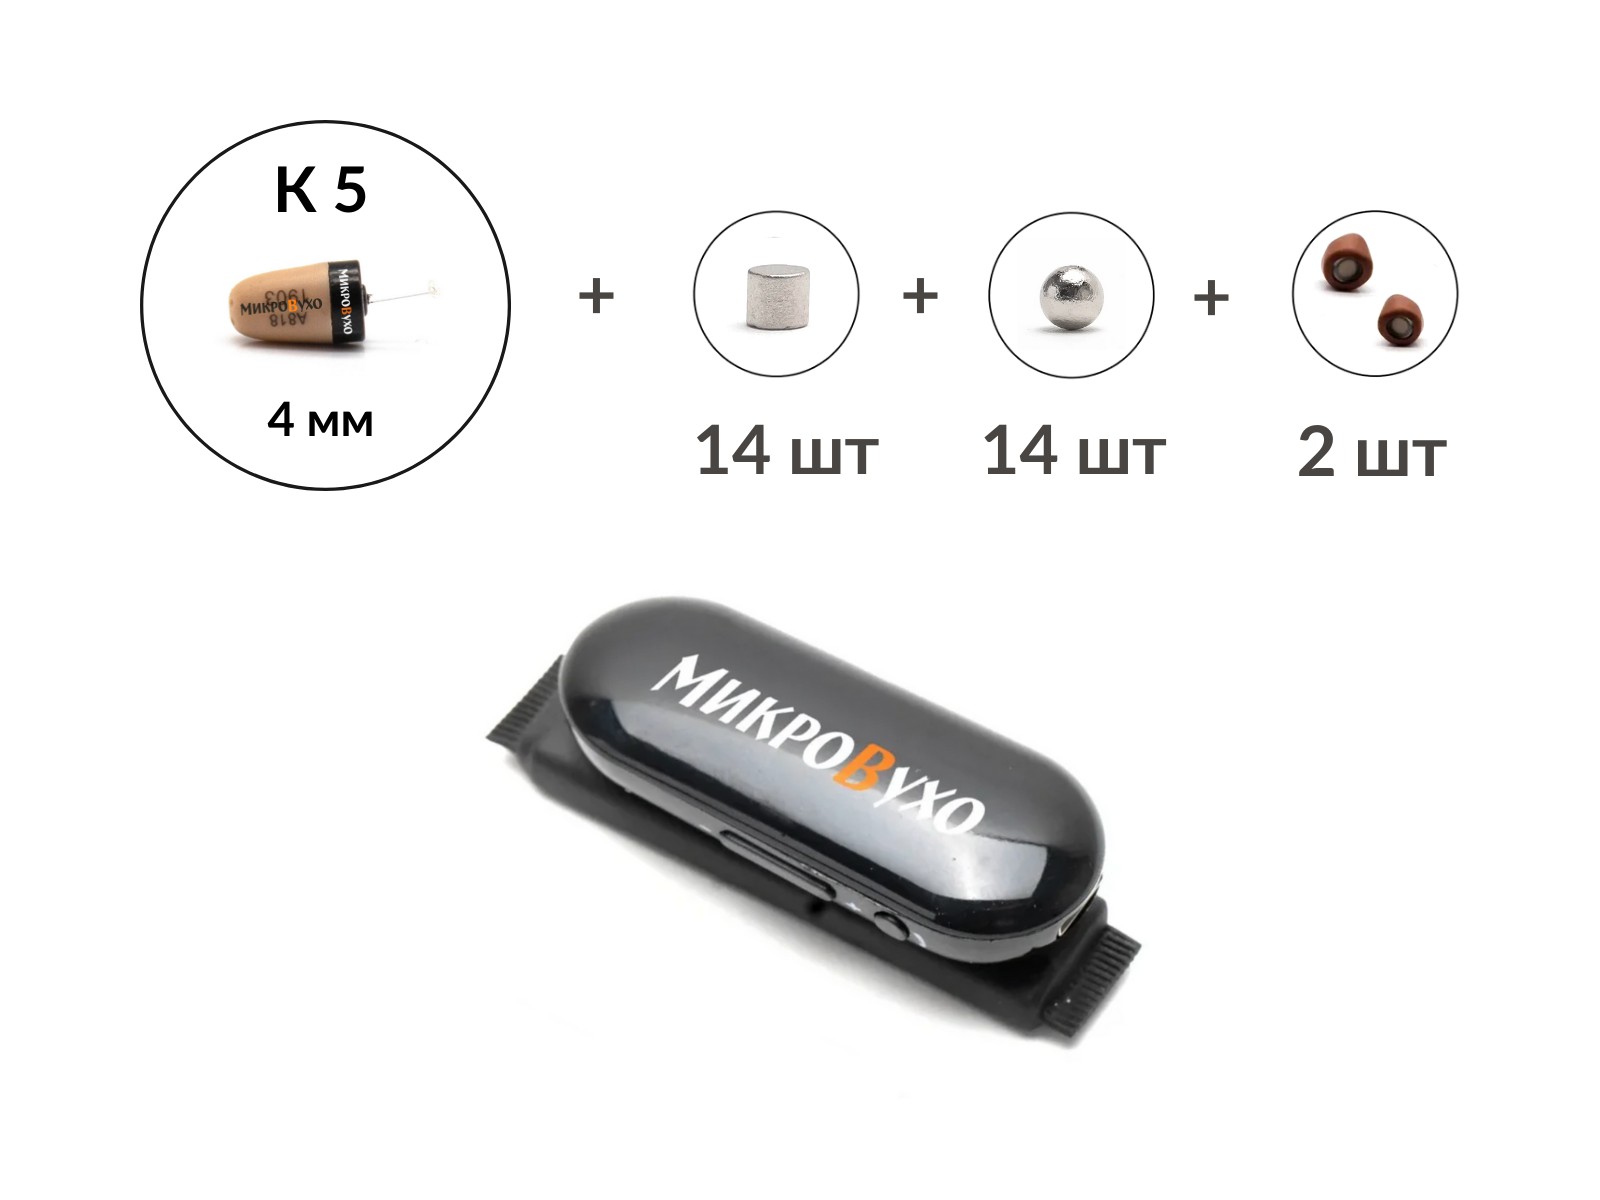 Универсальная гарнитура Bluetooth Box Pro Plus c капсулой К5 4 мм и магнитами 2 мм - изображение